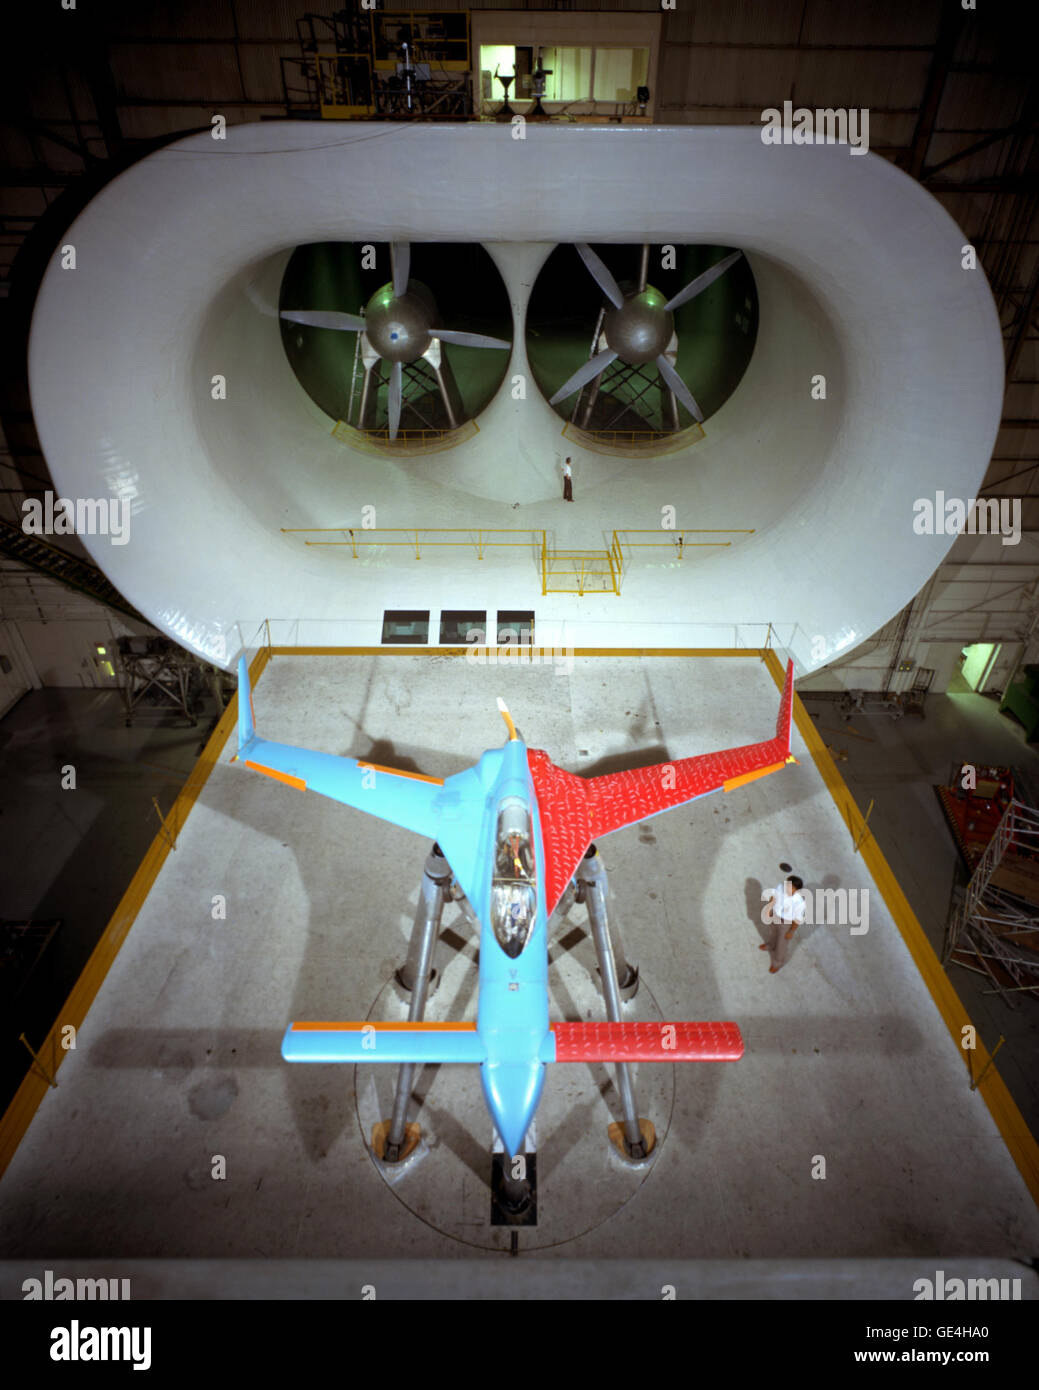 Il modello di Rutan VariEze 33 fu costruito dal modello e compositi sezione del Langley Research Center e quindi testati in 30 x 60 scala piena Tunnel. L'imbarcazione non è stato costruito per il volo, ma hanno un motore elettrico installato per guidare il propulsore come parte della sua aerodinamica studio nel Tunnel. Foto Stock